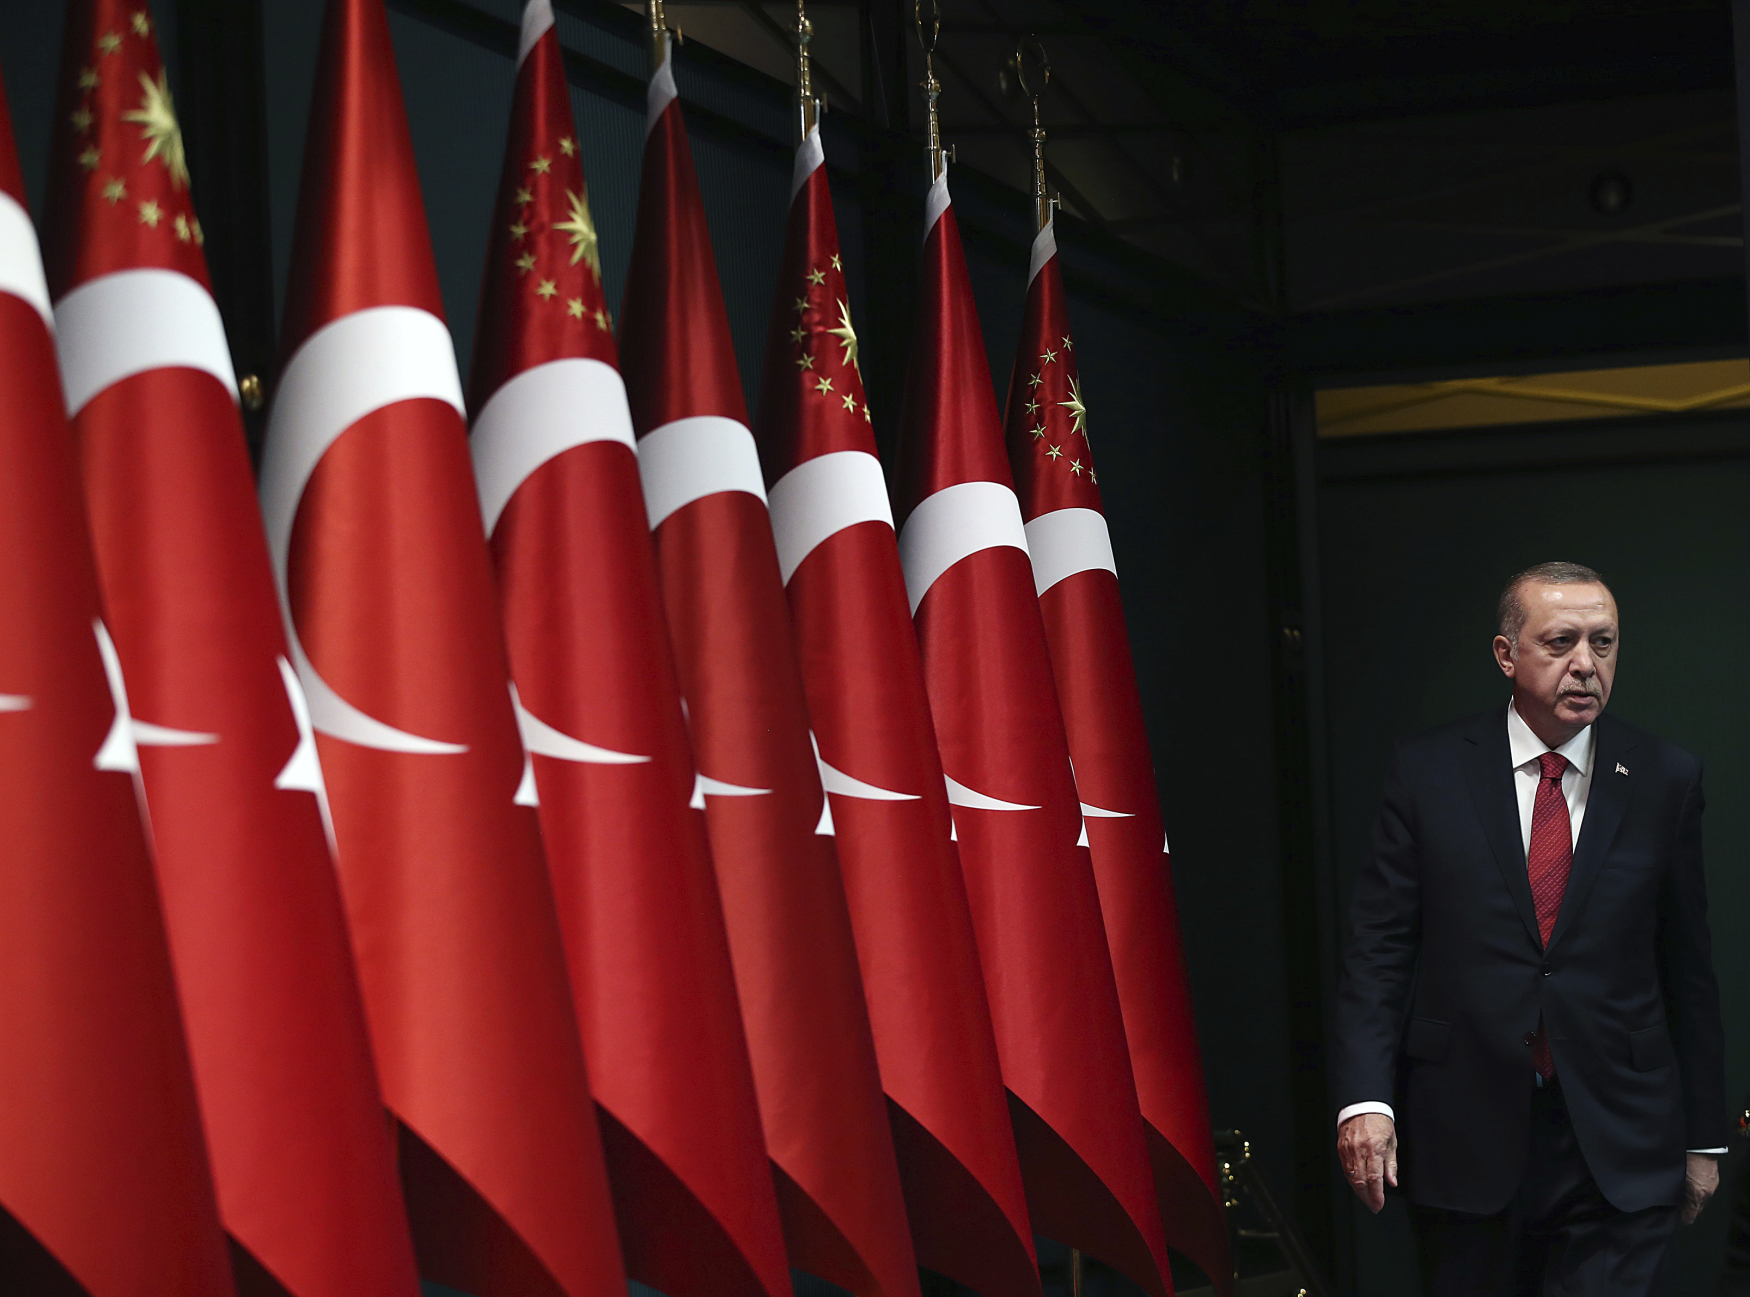 Turecký prezident Recep Tayyip Erdogan chce vést kampaň i v unijních členských státech